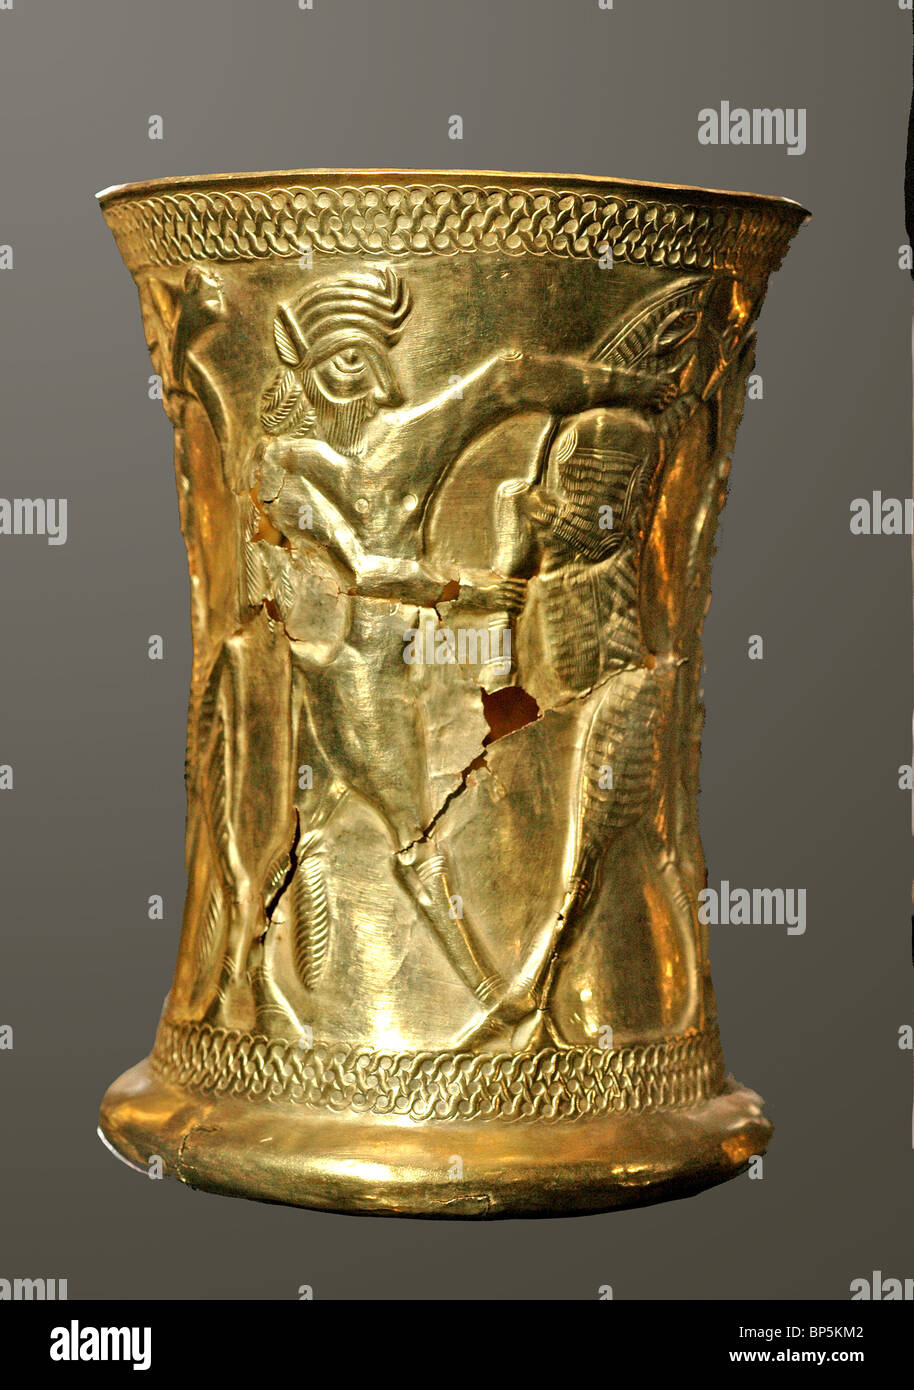 Gobelet d'or orné de créatures mythologiques datant c. 1200 BC. Le nord de l'Iran Banque D'Images